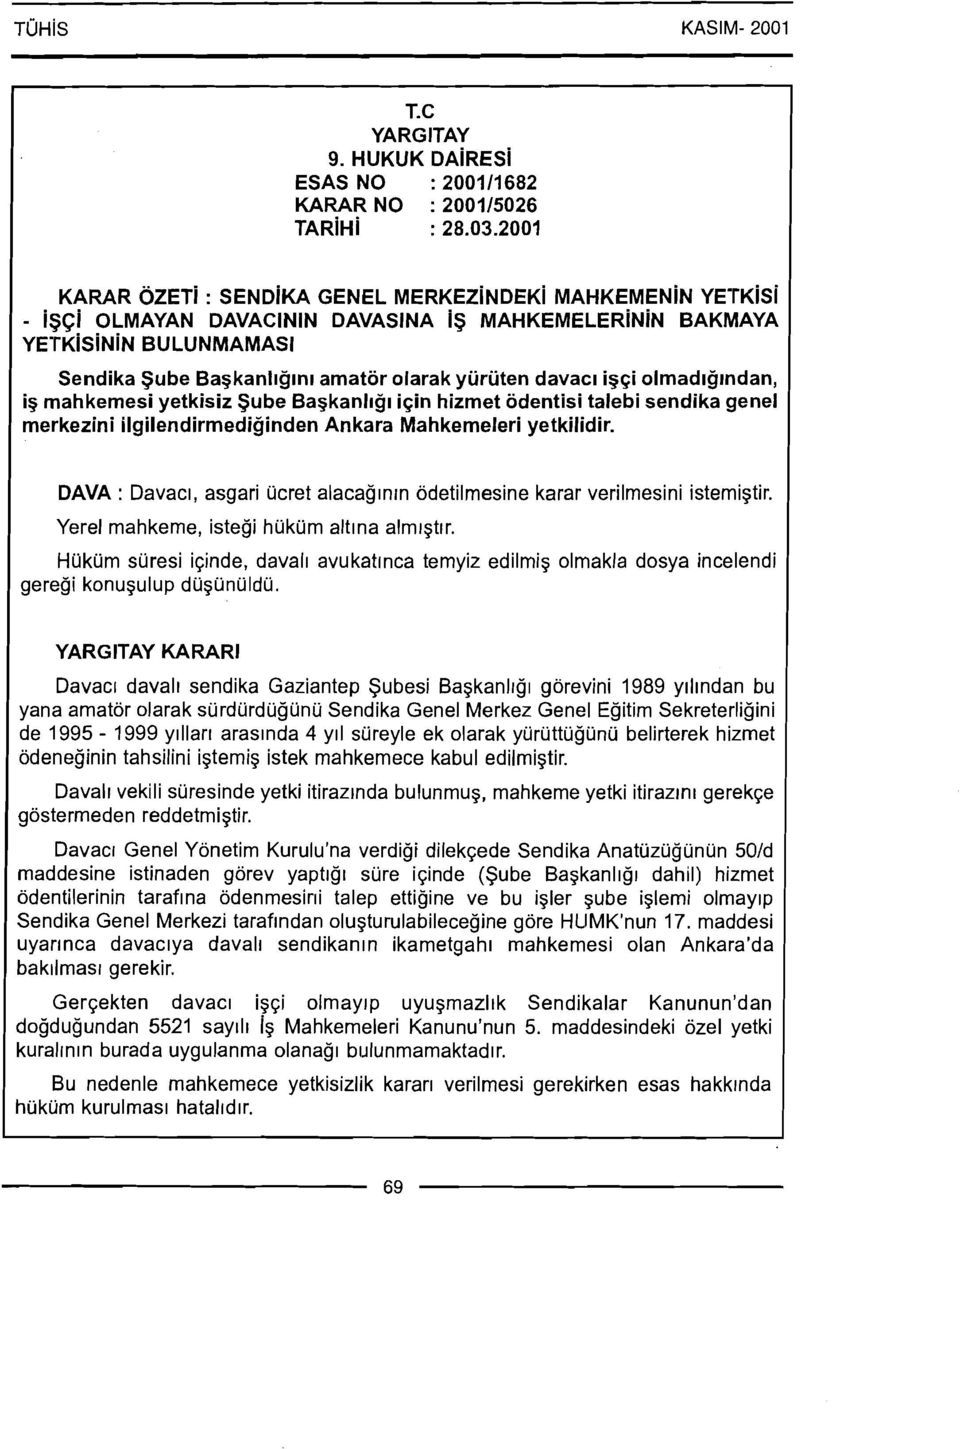 igqi olmadlg~ndan, ip mahkemesi yetkisiz Sube Bapkanllgl iqin hizmet odentisi talebi sendika genel merkezini ilgilendirmediginden Ankara Mahkemeleri yetkilidir.